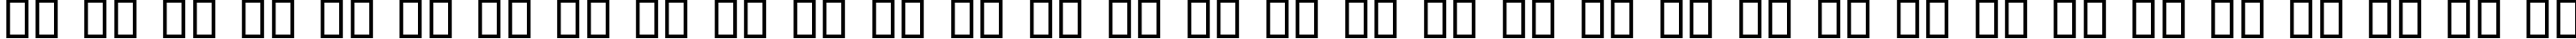 Пример написания русского алфавита шрифтом Charming Font